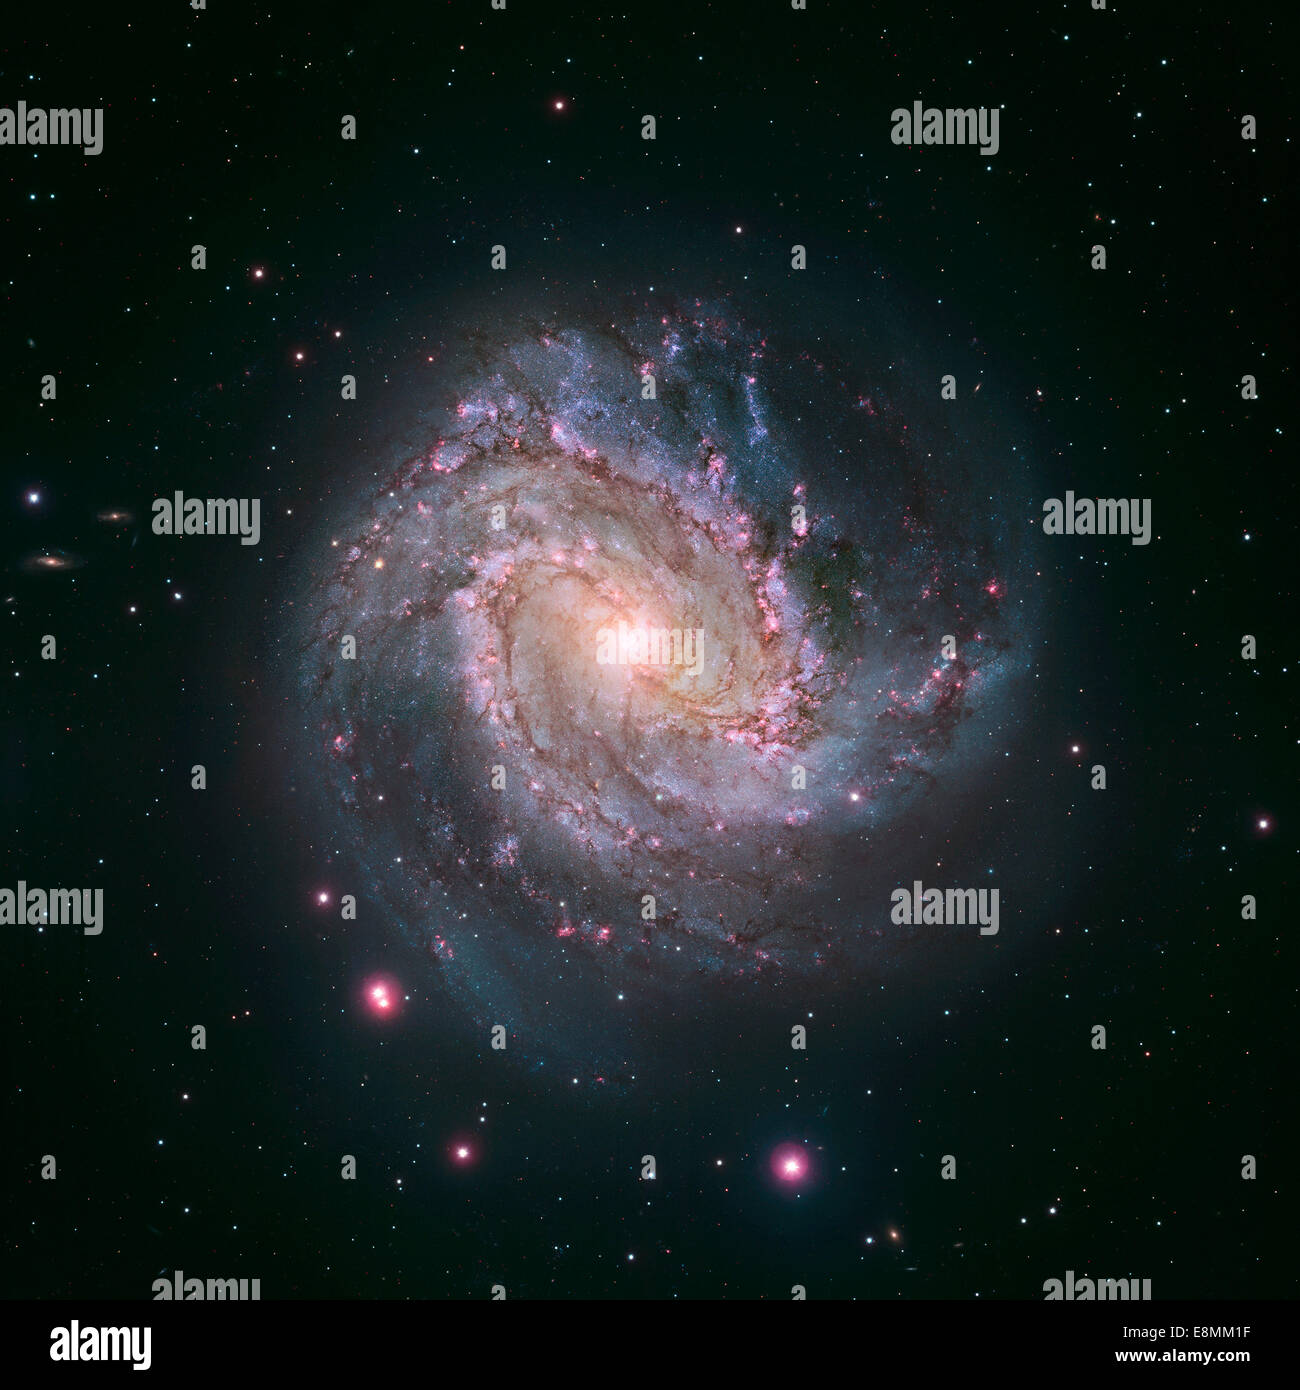 Il vivace magentas e blues in questa immagine di Hubble dello sbarramento galassia a spirale M83 rivelano che la galassia è in fiamme con stella f Foto Stock